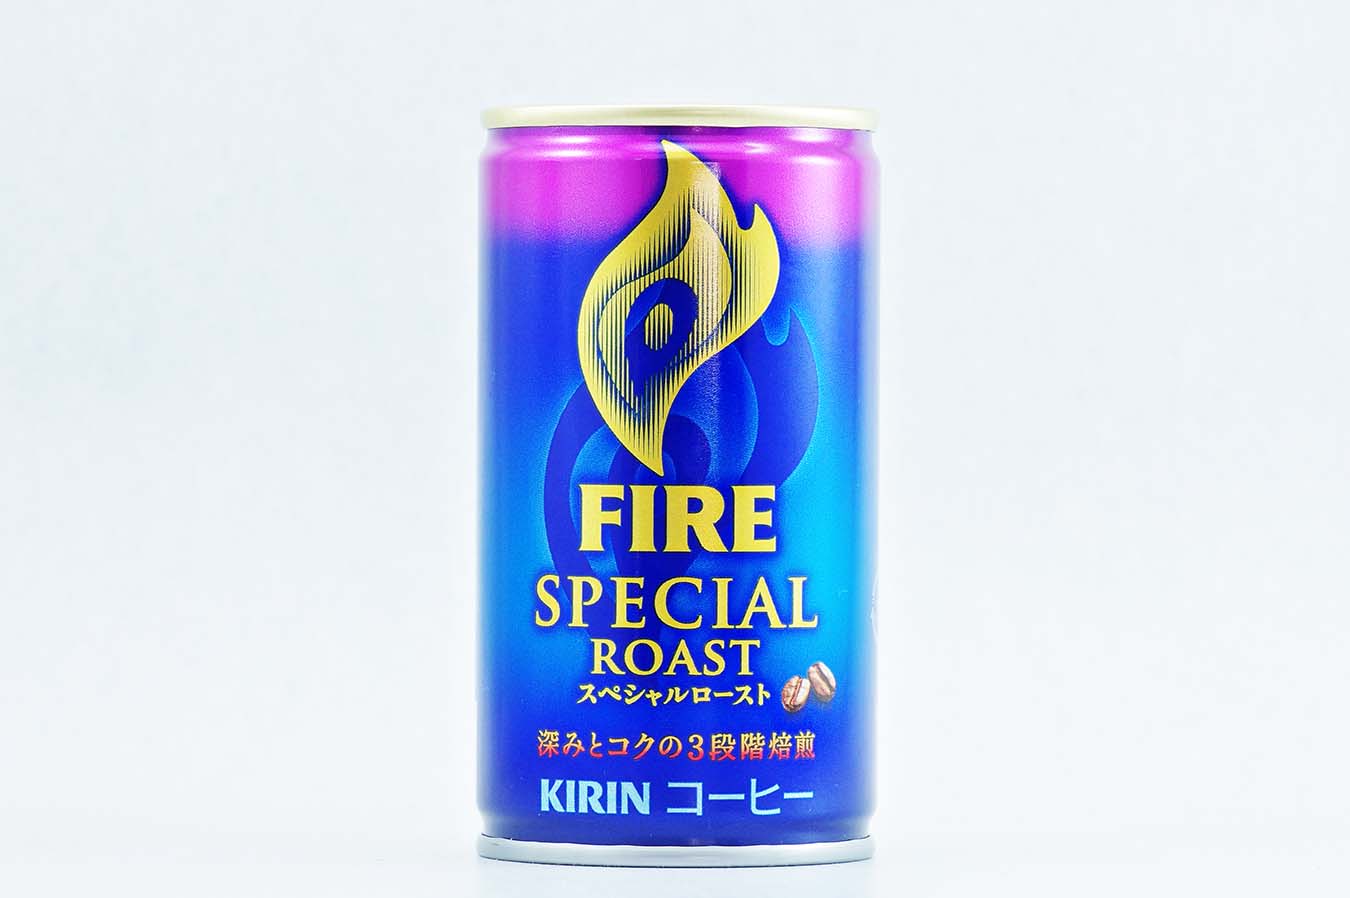 FIRE スペシャルロースト 170g缶 2015年11月